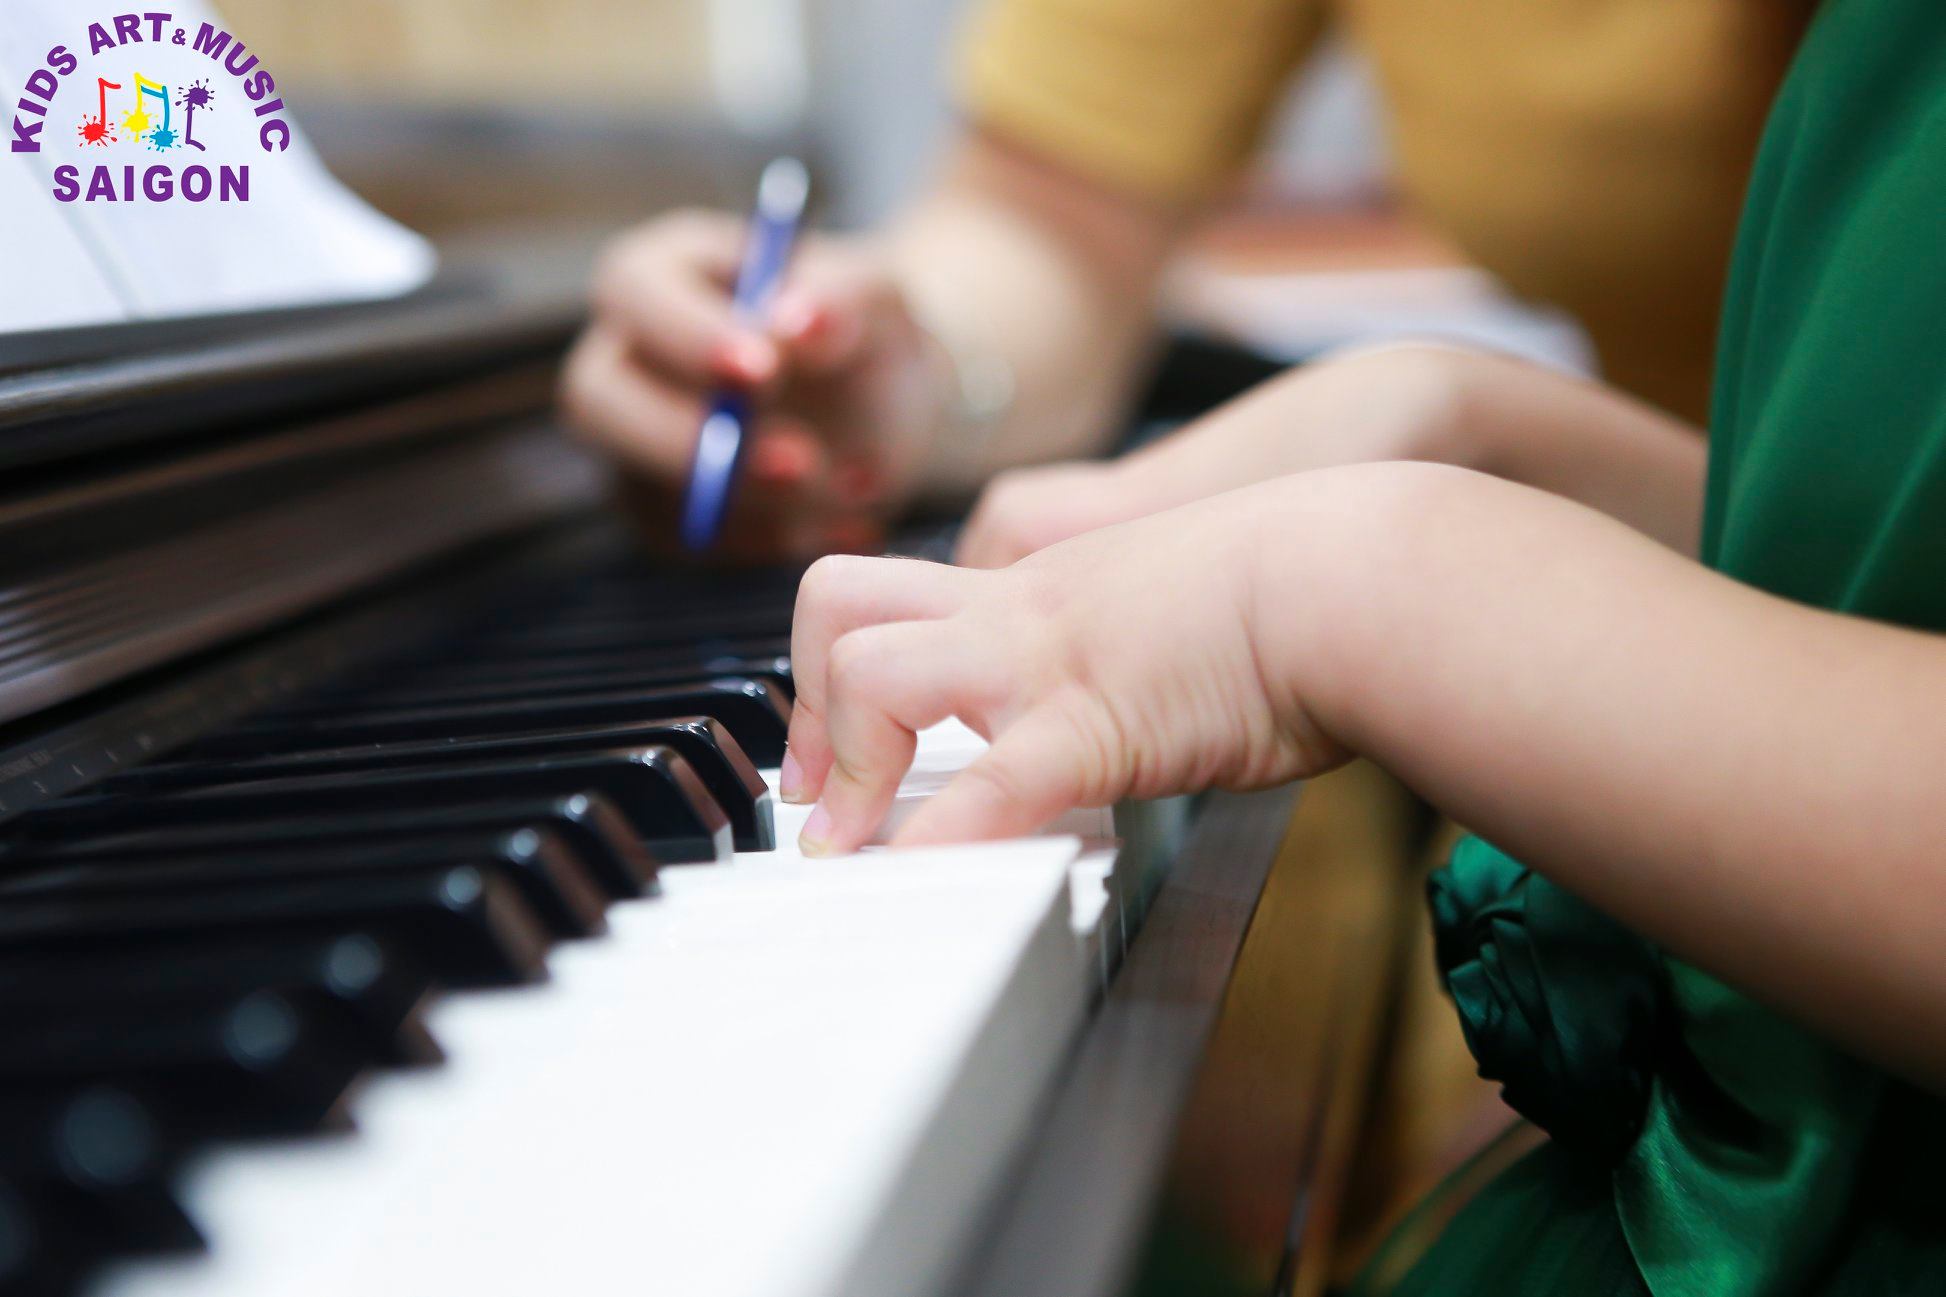 “Thời điểm vàng” cha mẹ nên cho trẻ học đàn piano. ảnh 2